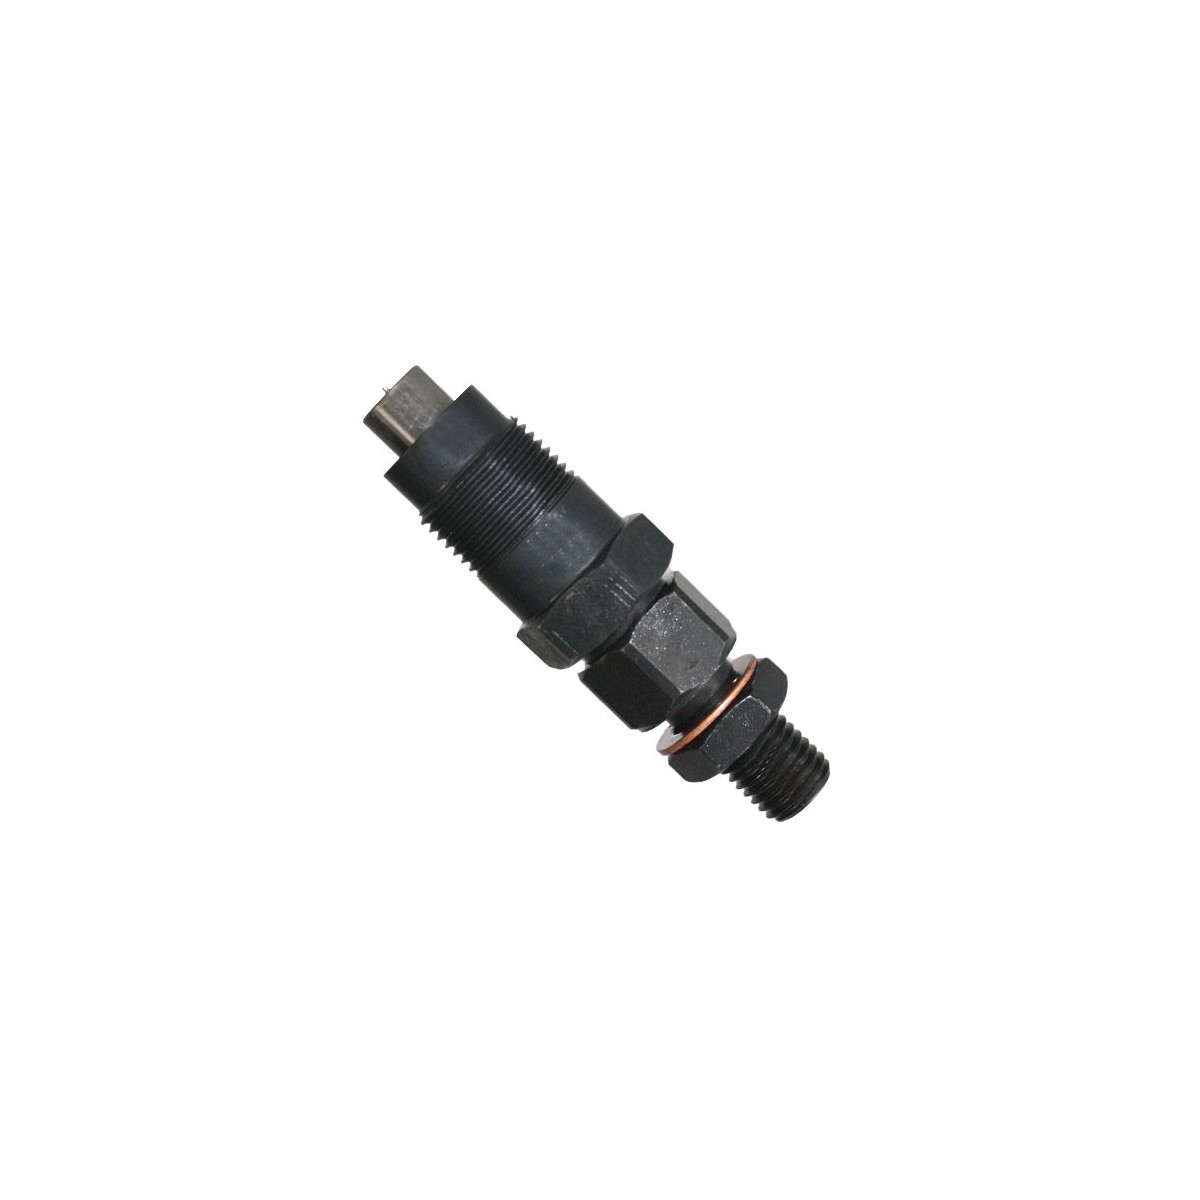 Kubota 1C010-53002 injection nozzle